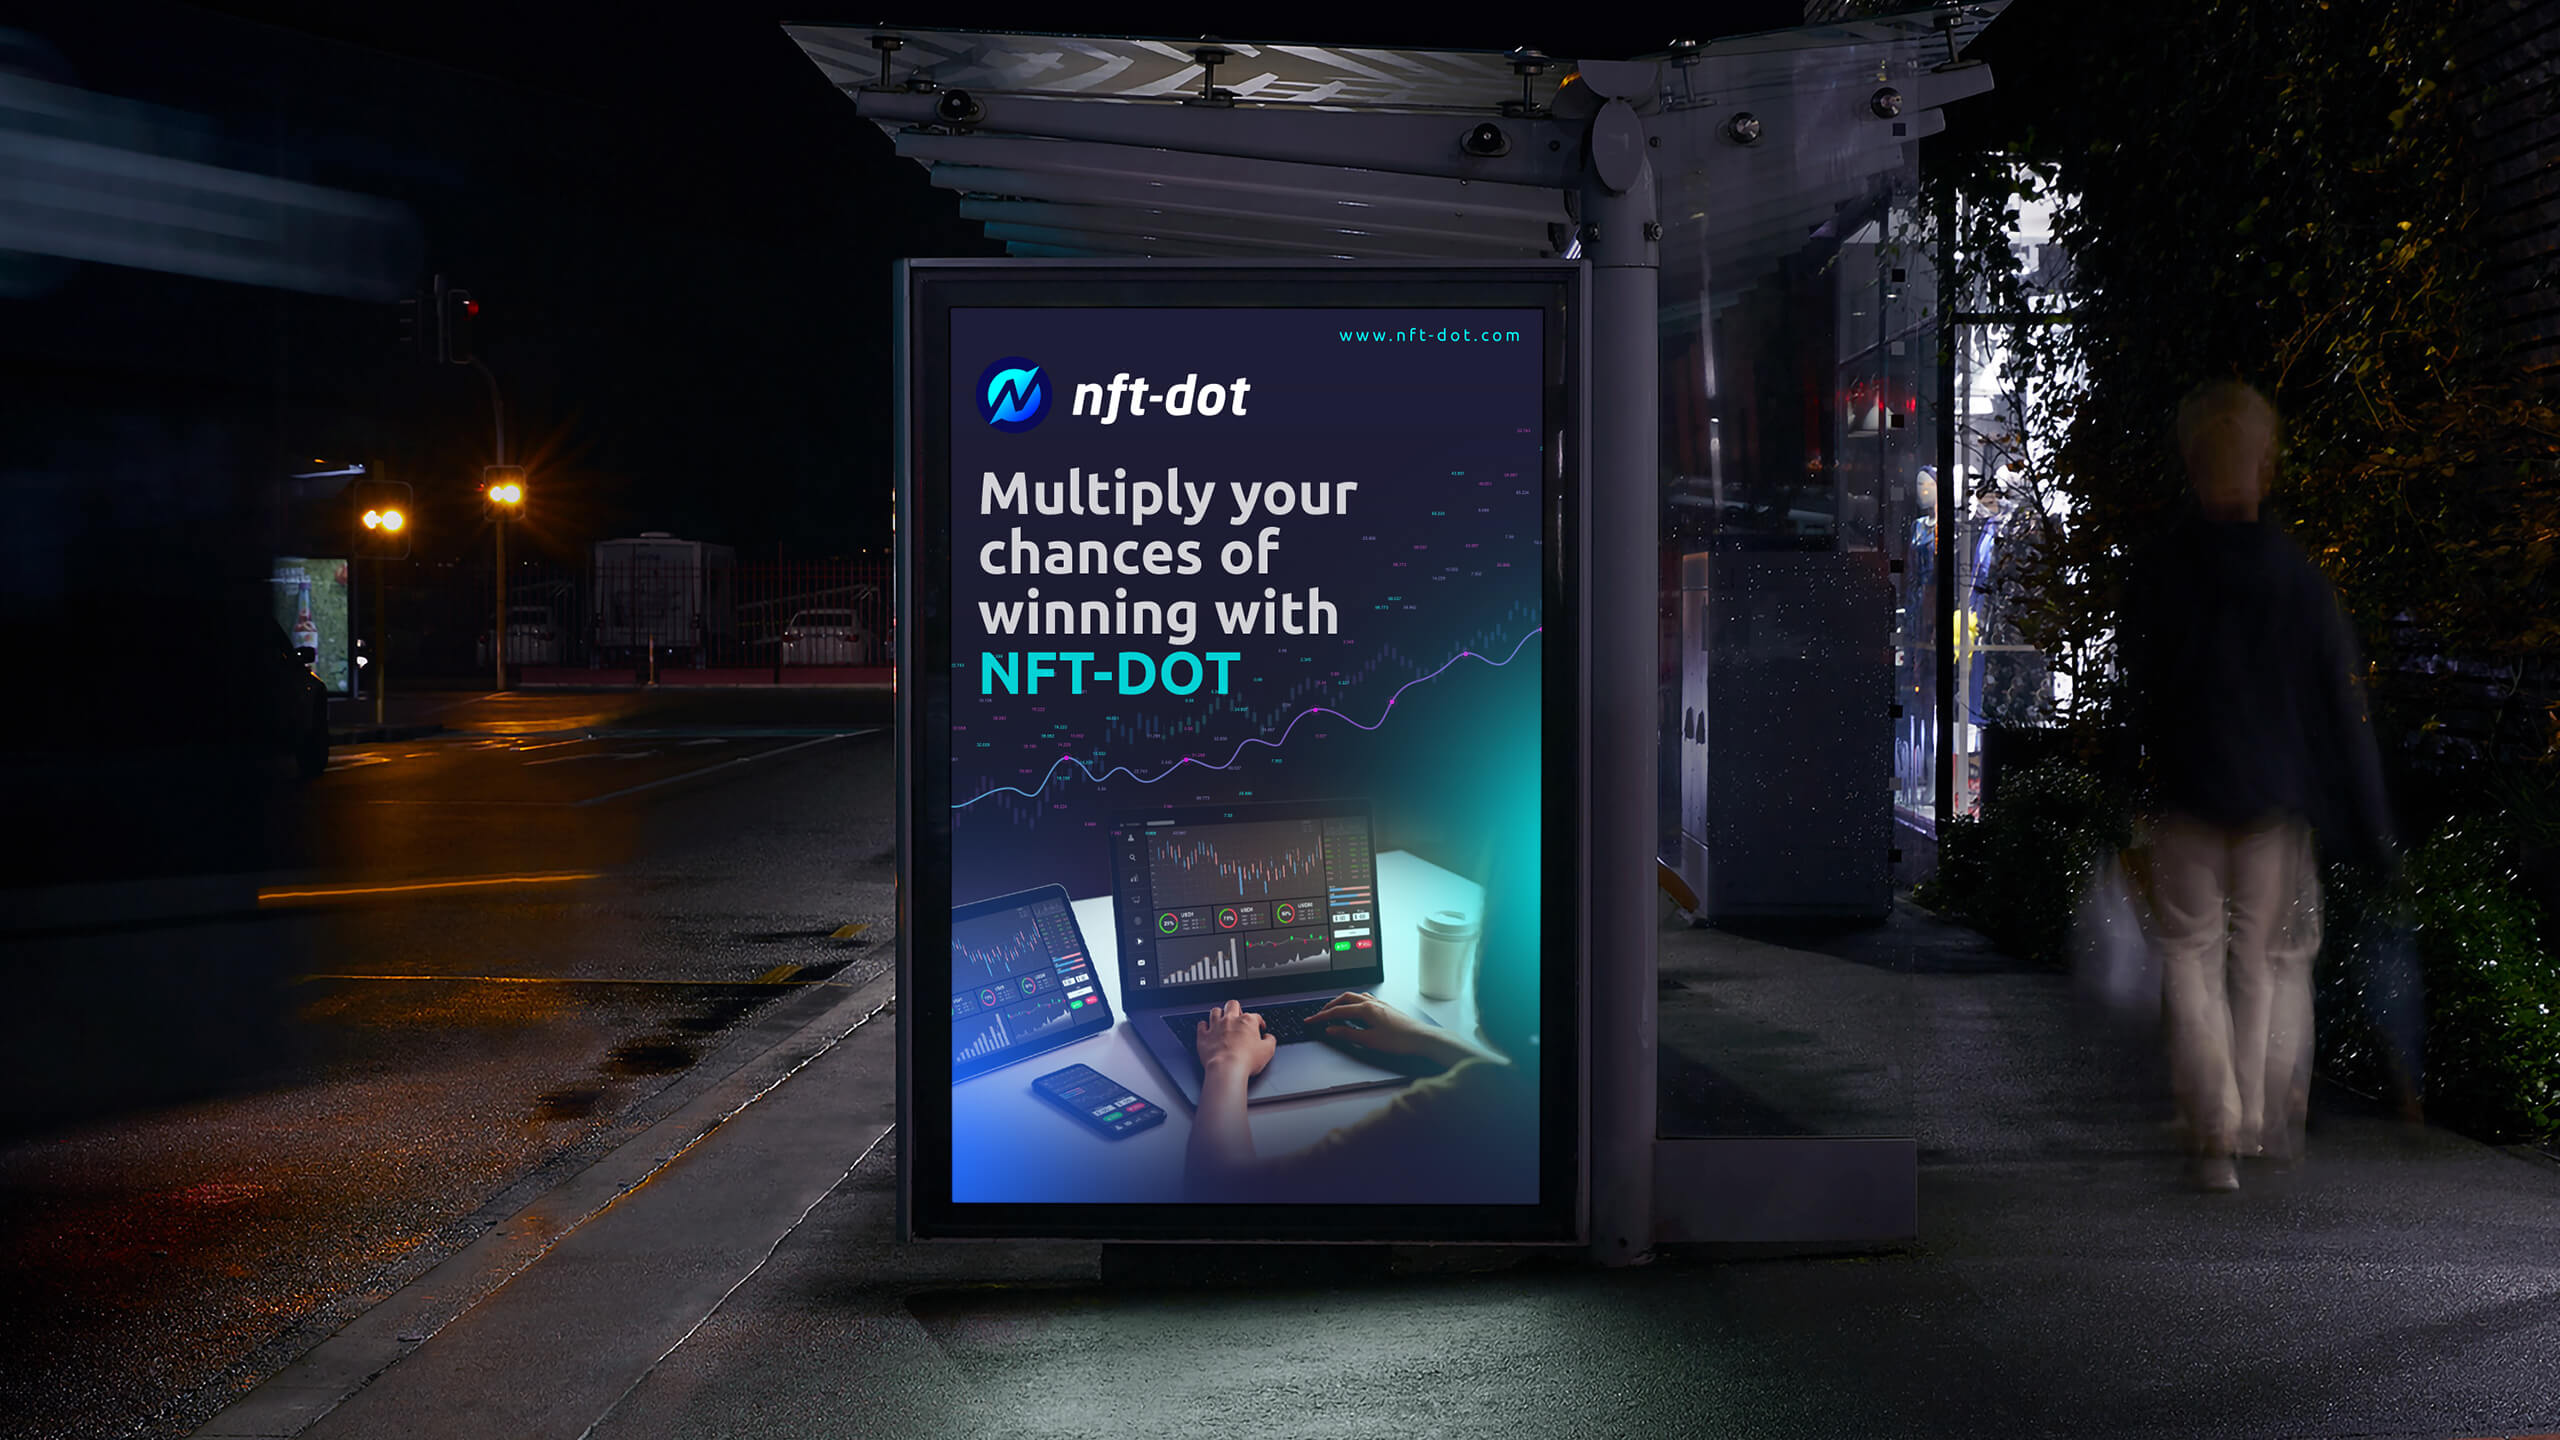 Rapidez, seguridad y posibilidades sin límites son tan solo algunas de las ventajas de un token, pero NFT -Dot va un paso más adelante al operar en Binance, el exchange más popular del mundo.  Multiplica tus ganancias con NFT-Dot. Descubre cómo ahora. 